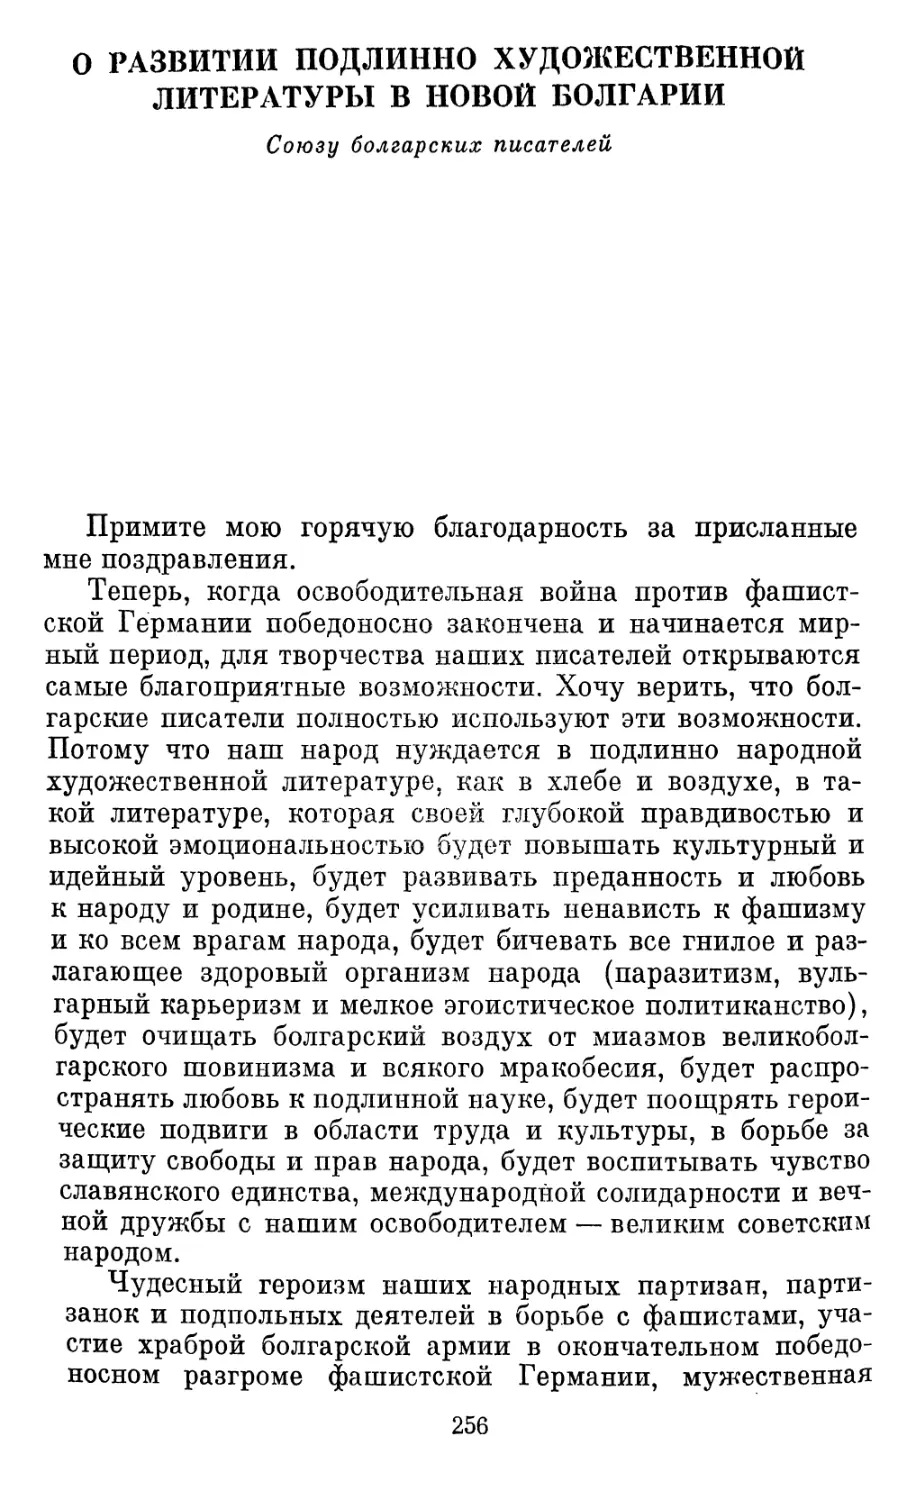 О развитии подлинно художественной литературы в новой Болгарии. Союзу болгарских писателей. Москва, 14 мая 1945 года